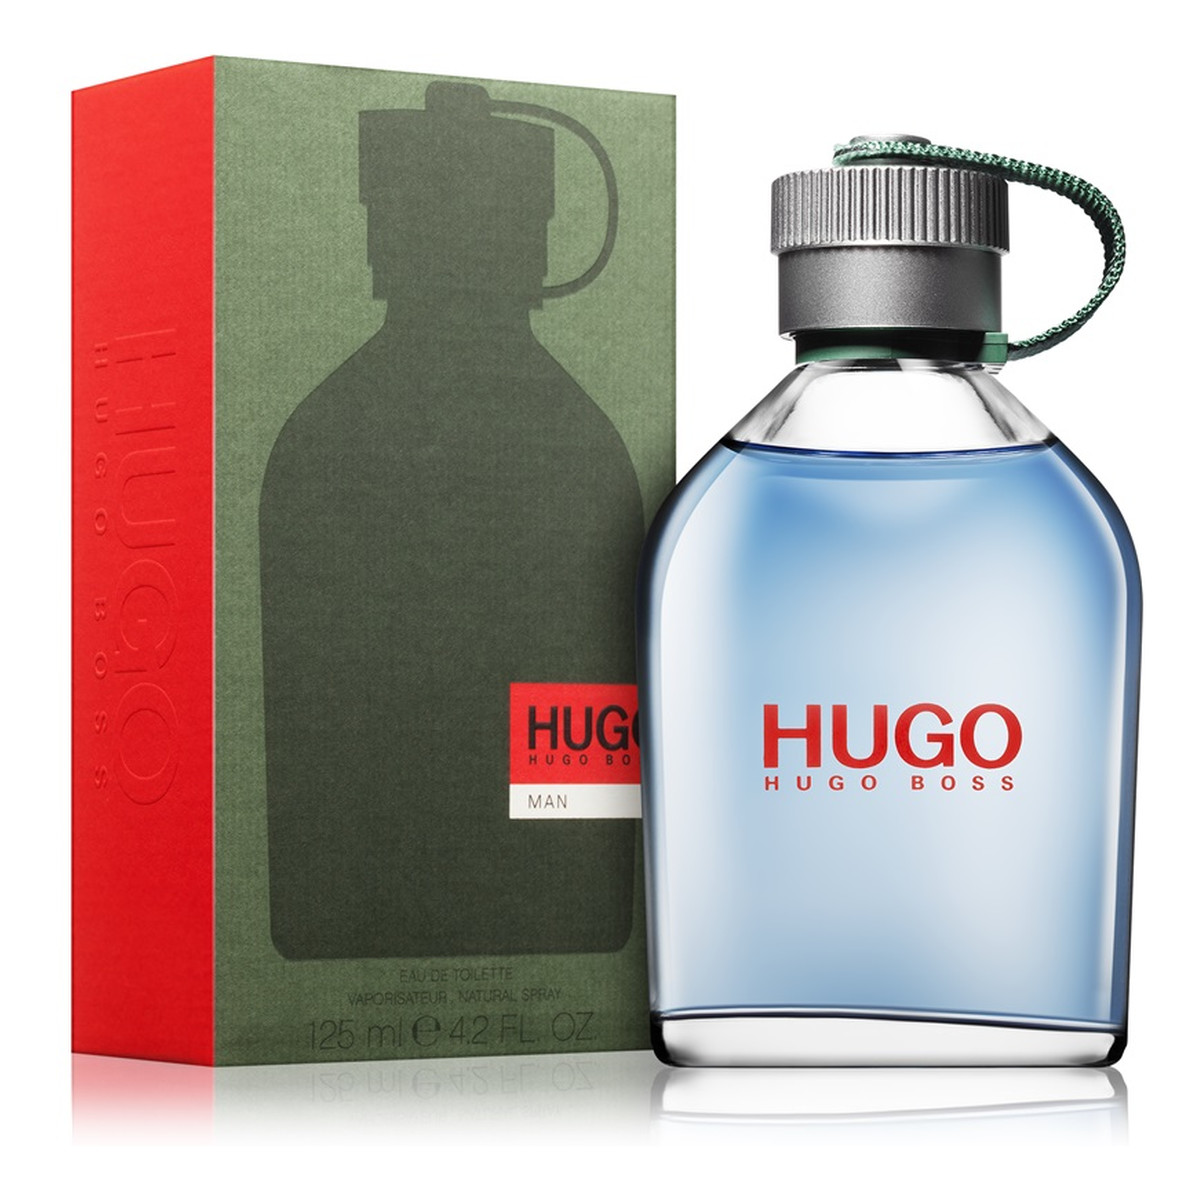 Hugo Boss Hugo Woda toaletowa dla mężczyzn 125ml